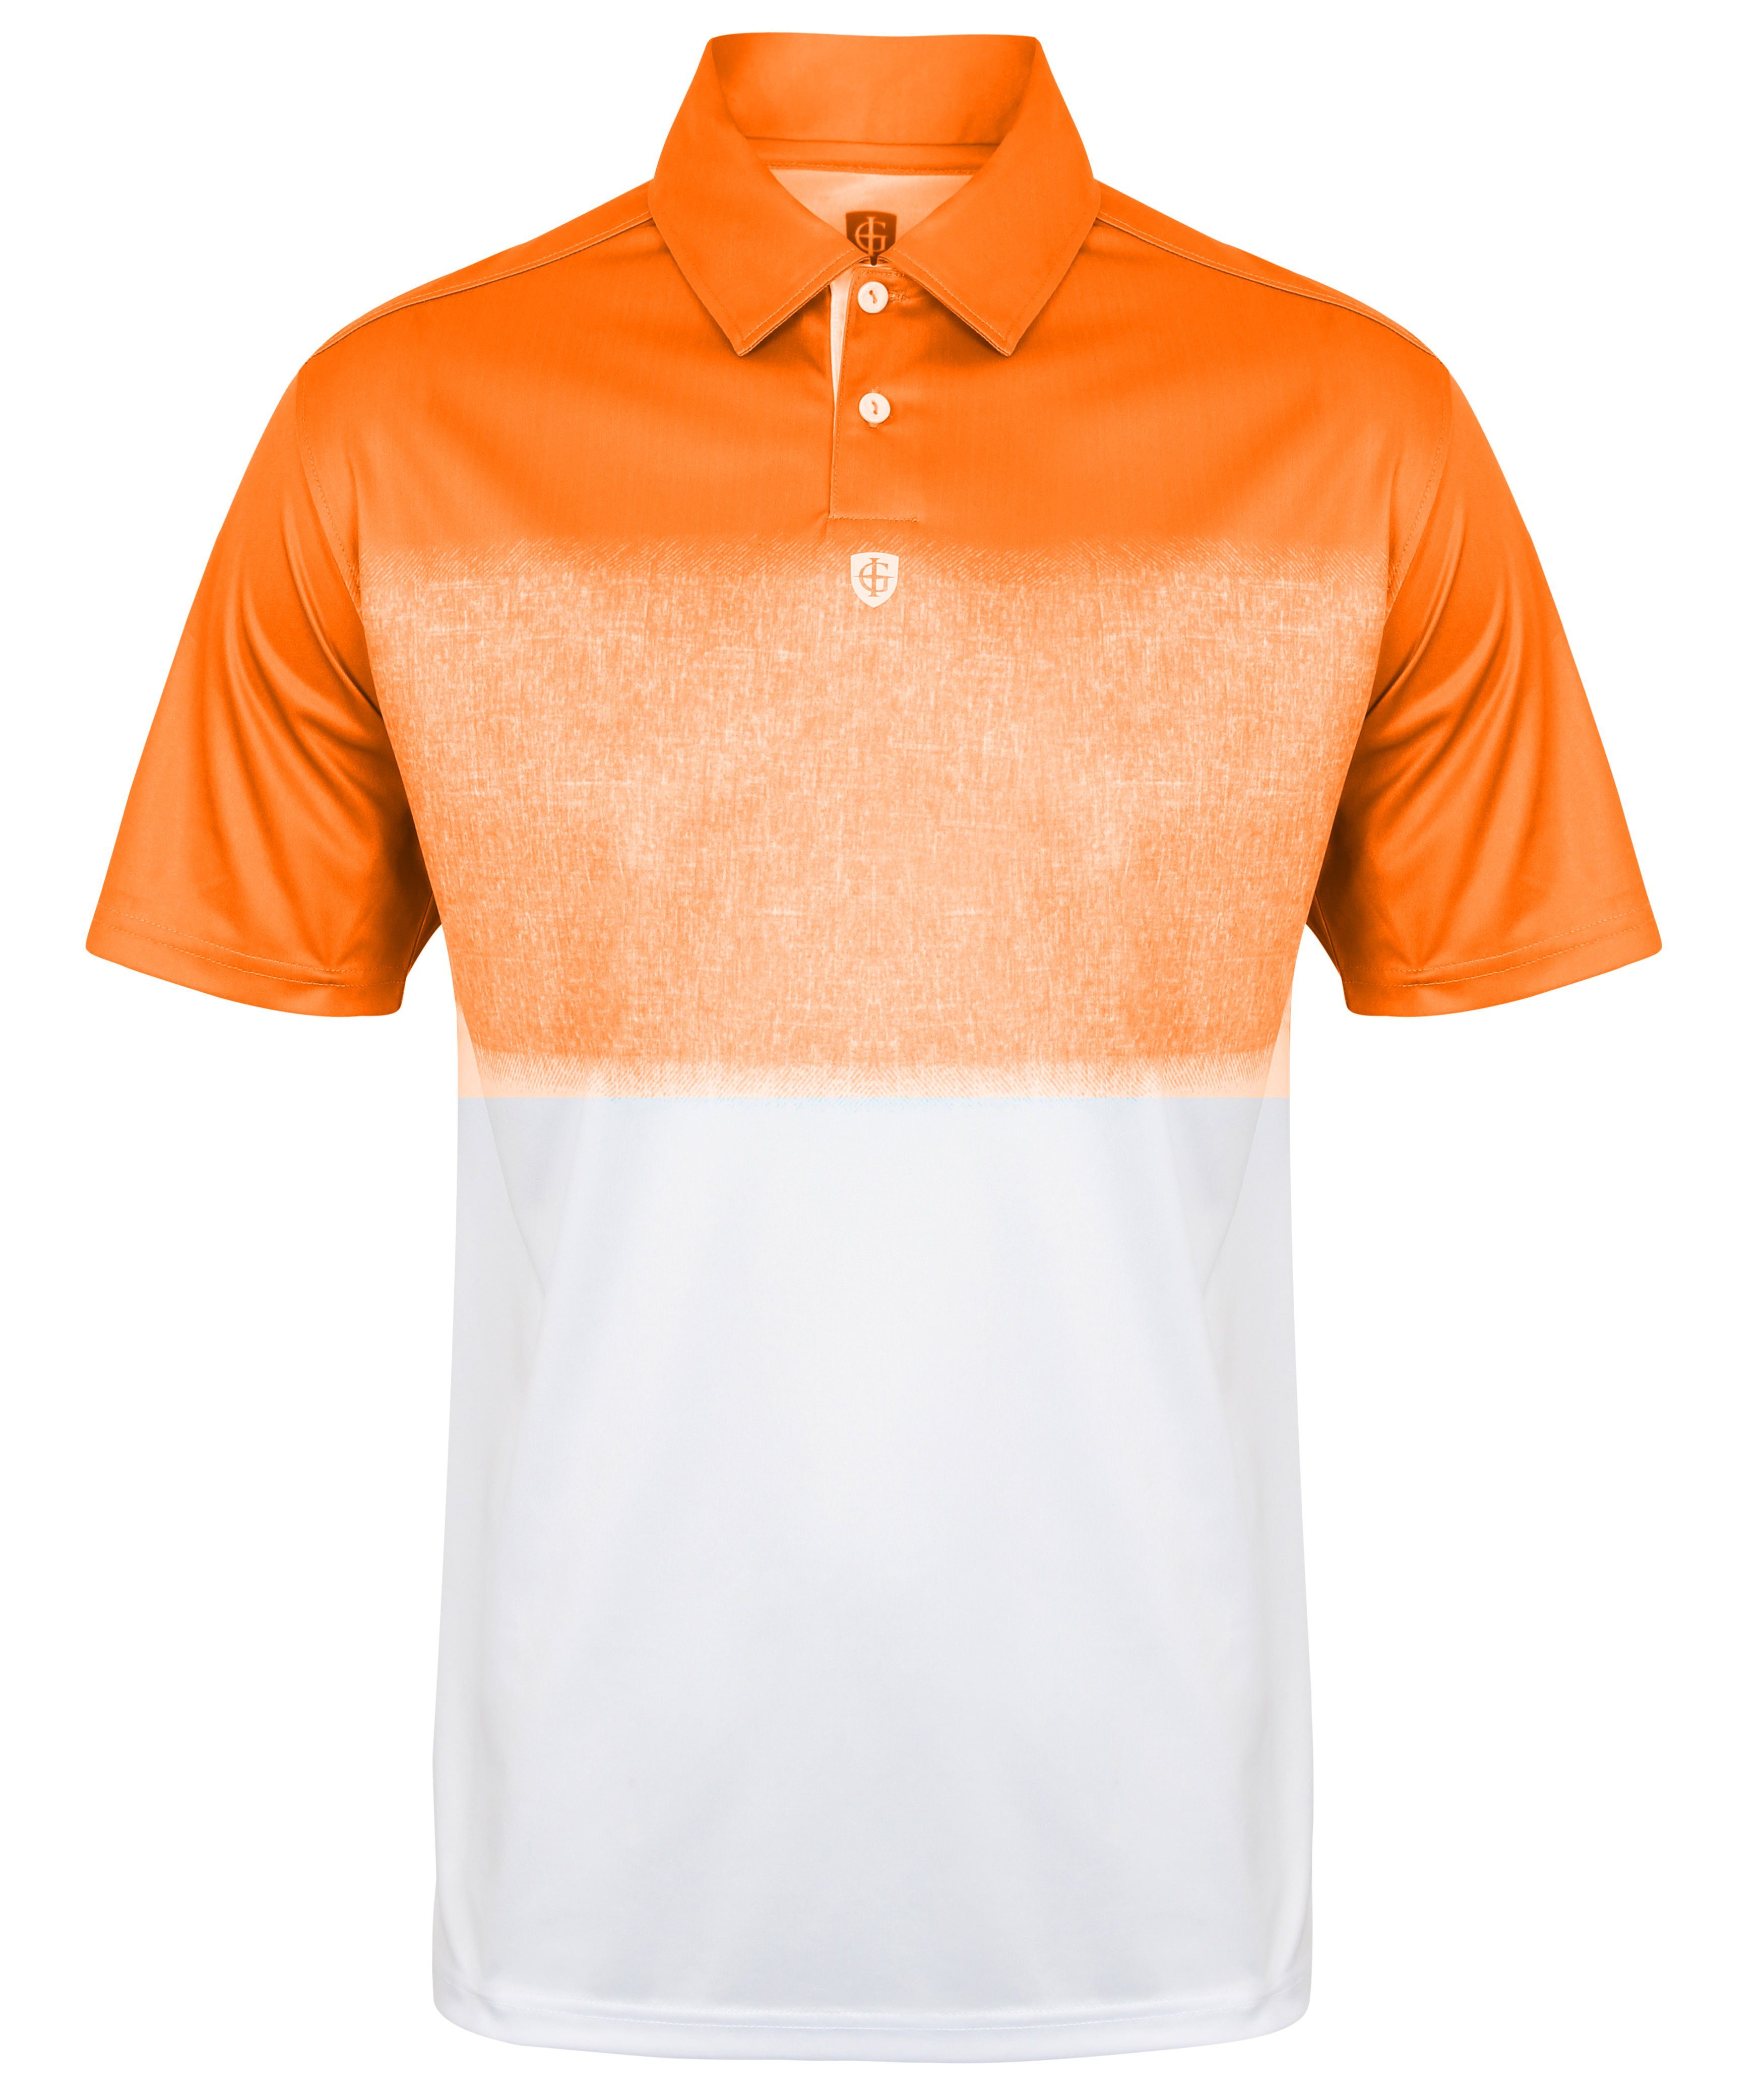 Orange Poloshirt 1650 ISLAND Poloshirt - Hightech-Material GREEN Herren atmungsaktives